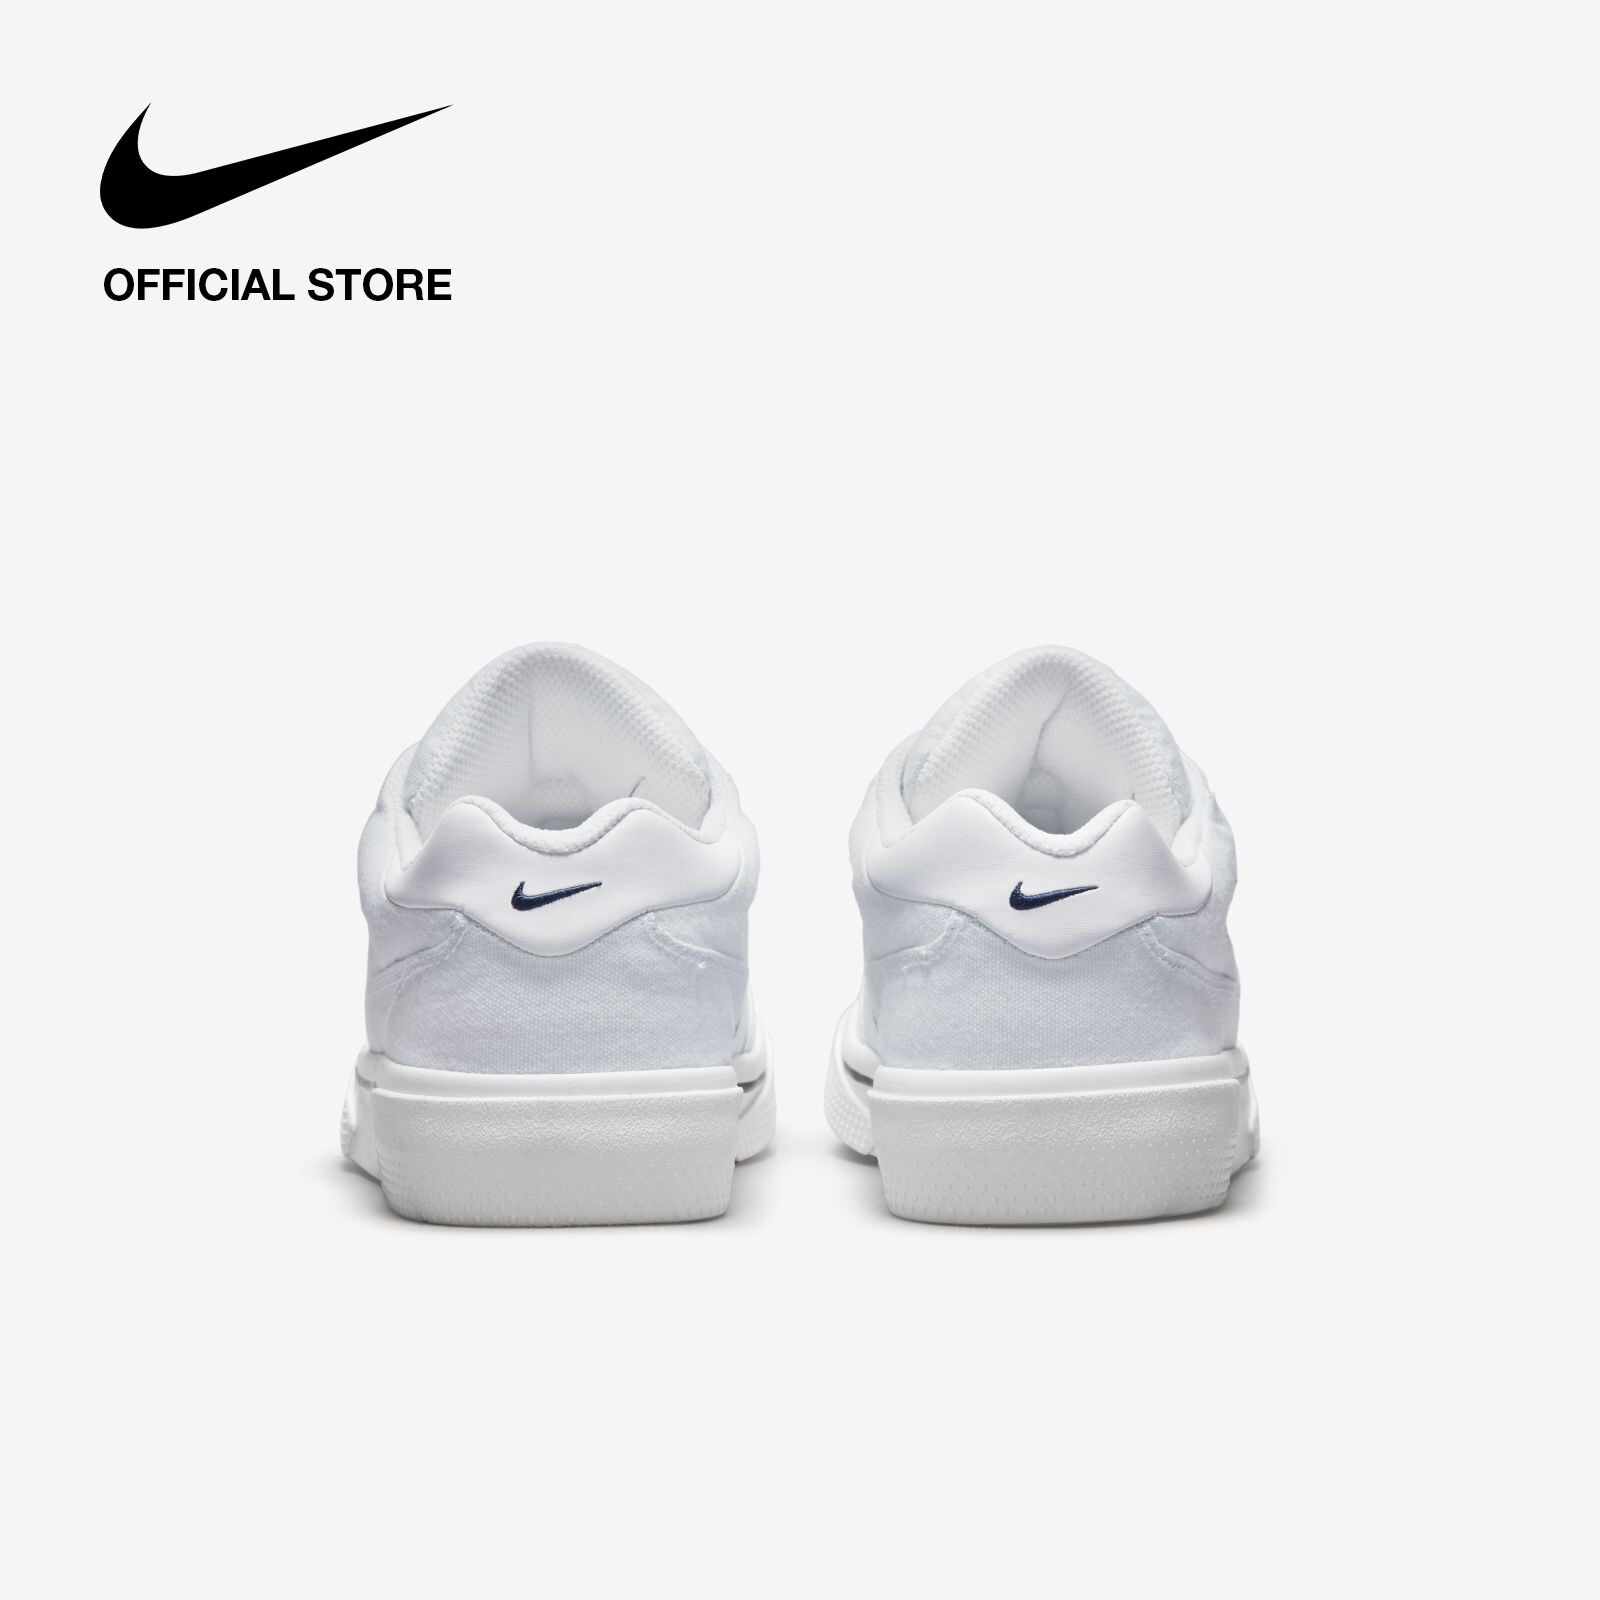 Nike Women's Retro GTS Shoes - White ไนกี้ รองเท้าผู้หญิง เรโทร จีทีเอส - สีขาว